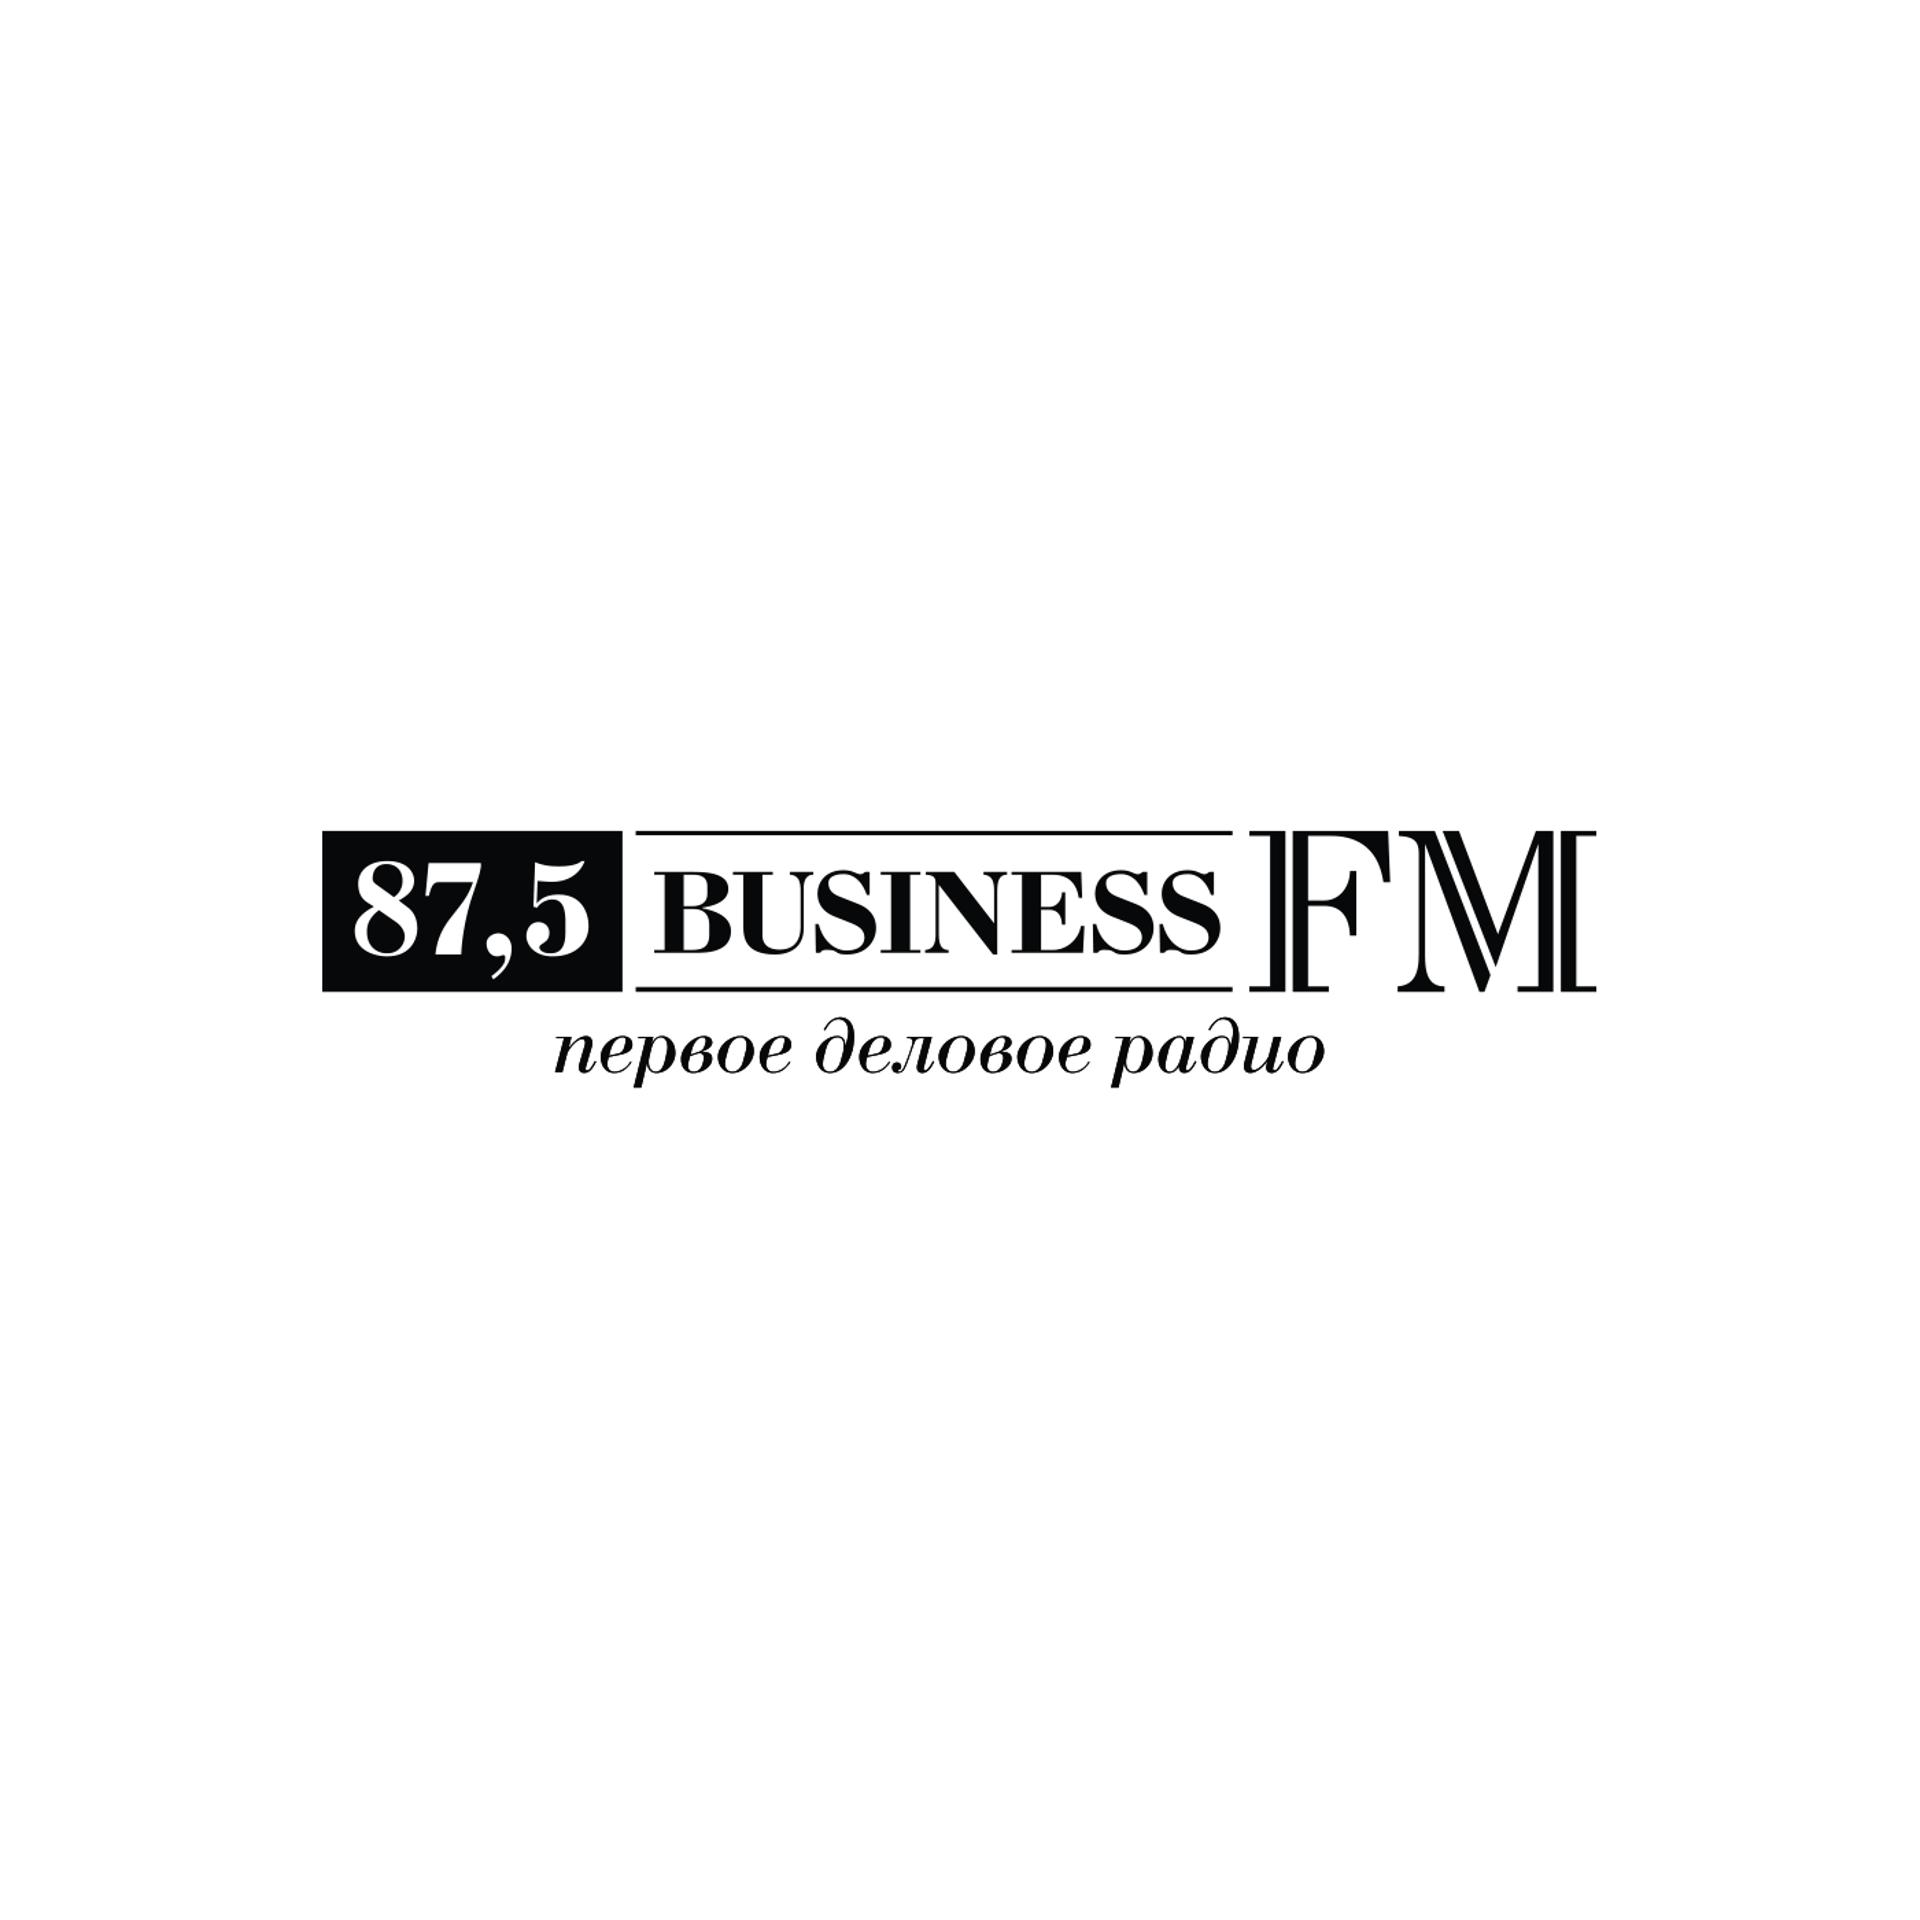 Сайт радио бизнес фм. Бизнес ФМ. Бизнес ФМ лого. Бизнес ФМ СПБ. 107 4 Бизнес ФМ.